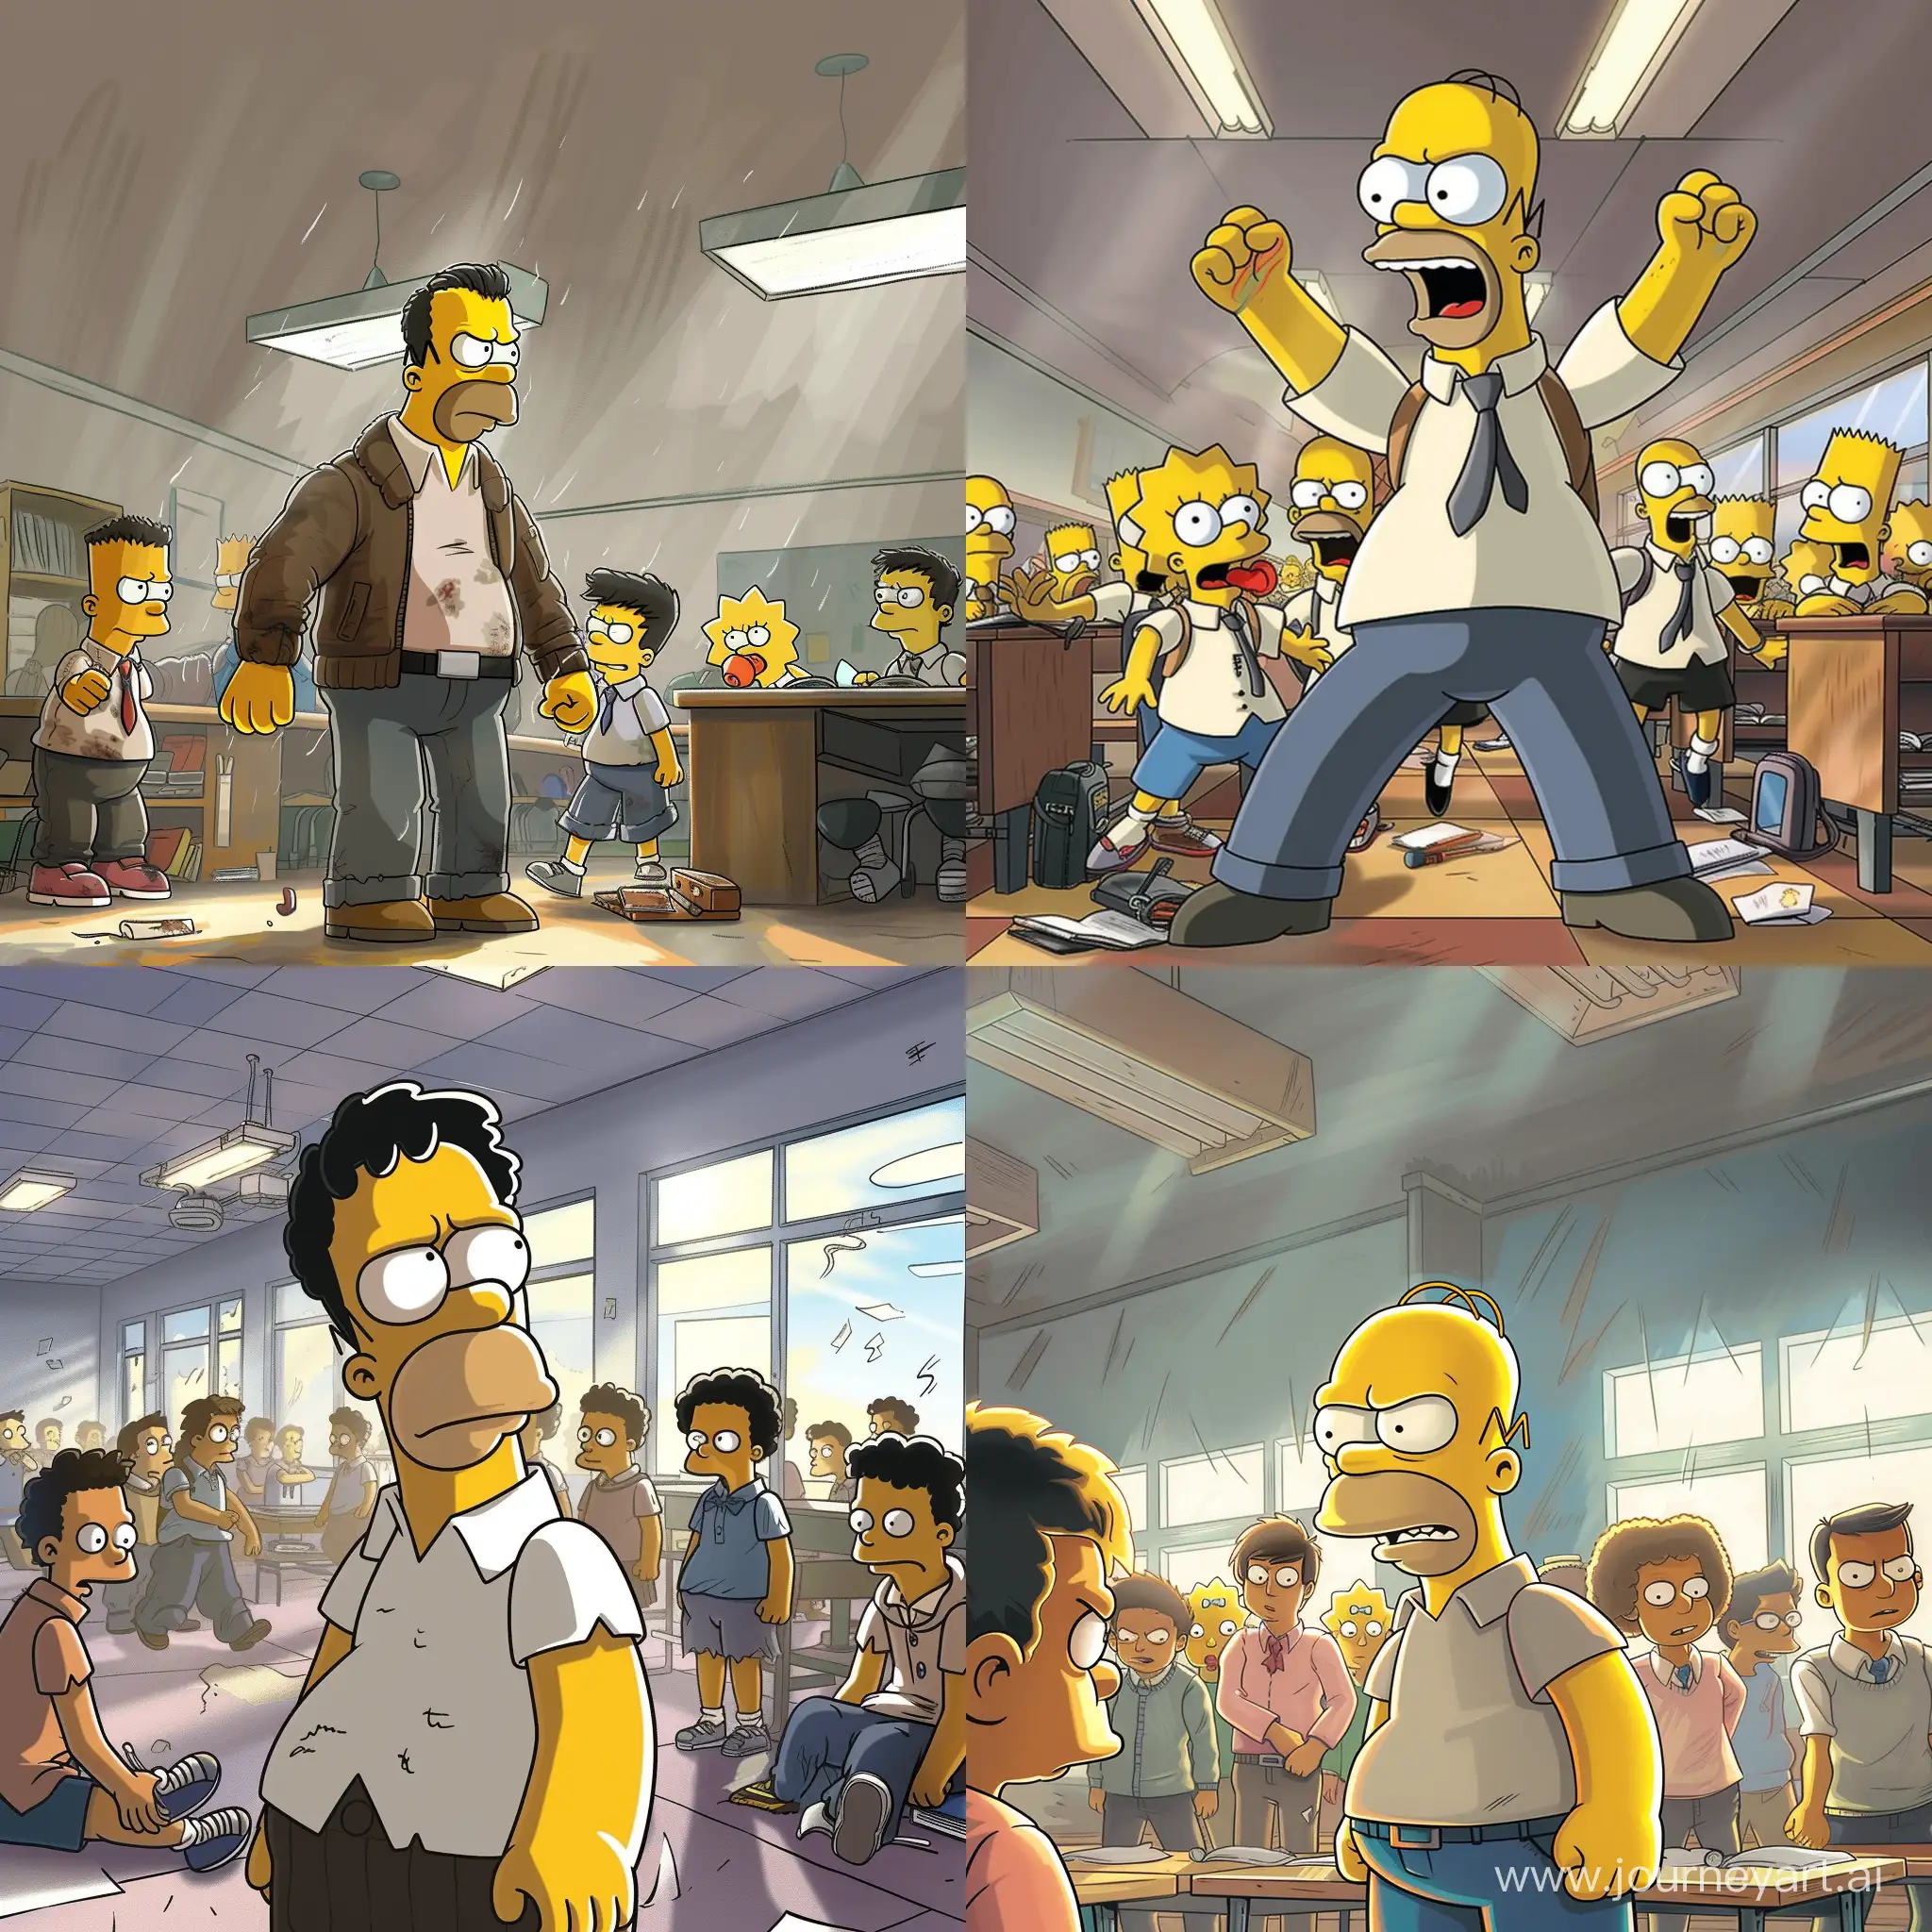 Гомера Симпсона высмеивают школьники, за то что он слабый в школе, мрачная атмосфера, рисовка как у pixar